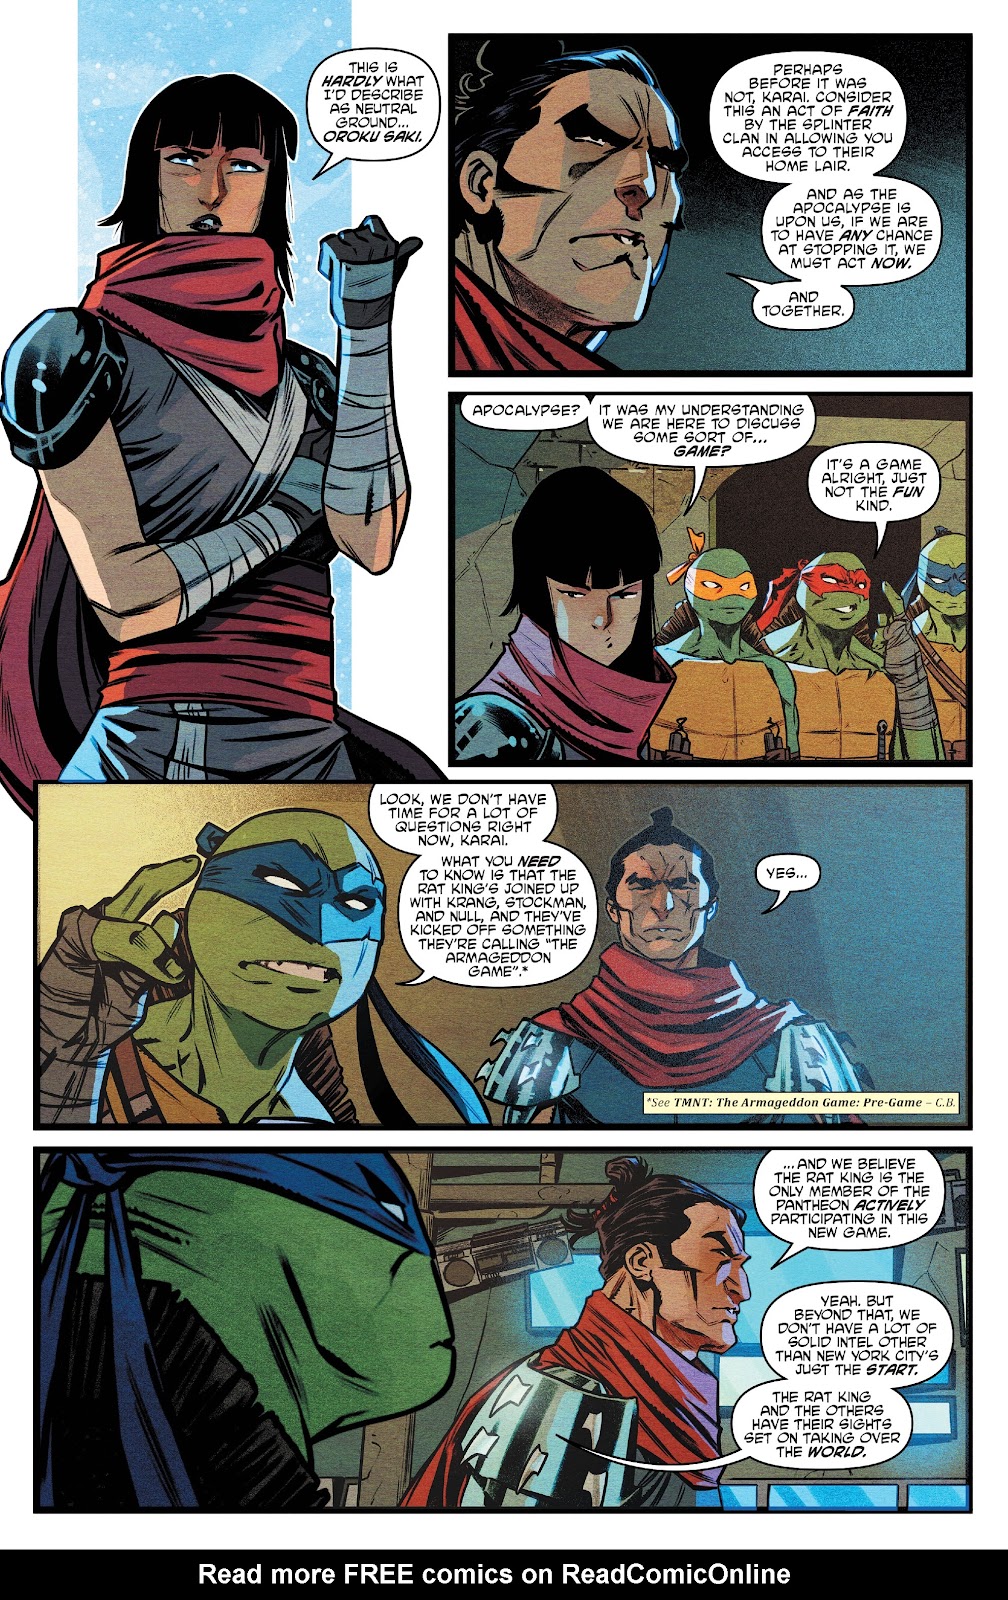 Teenage Mutant Ninja Turtles: The Armageddon Game issue 1 - Page 8